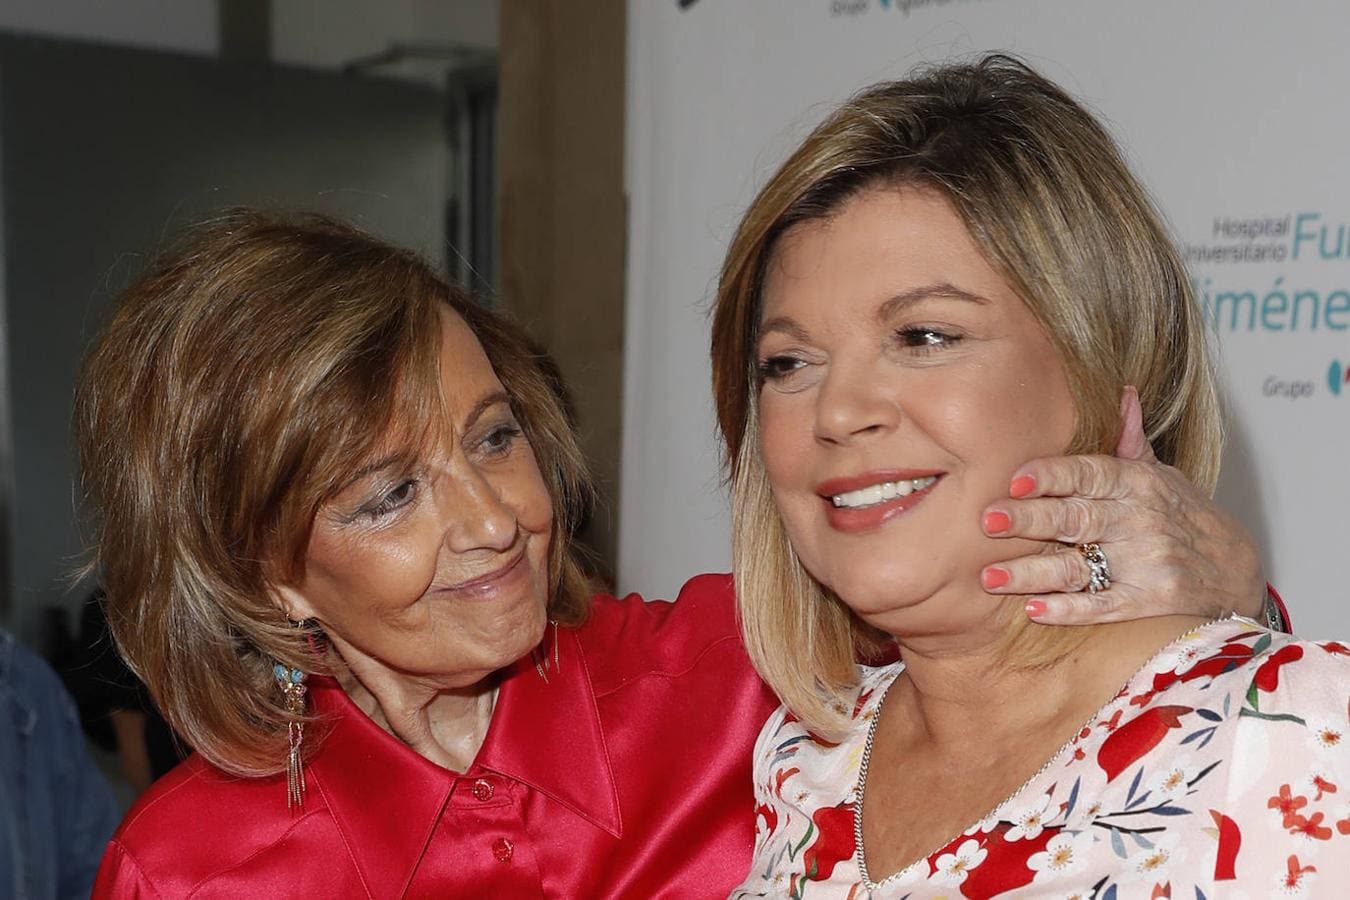 La presentadora Terelu Campos junto a la periodista María Teresa Campos en el hospital Fundación Jiménez Diaz tras recibir su alta hospitalaria en 2018